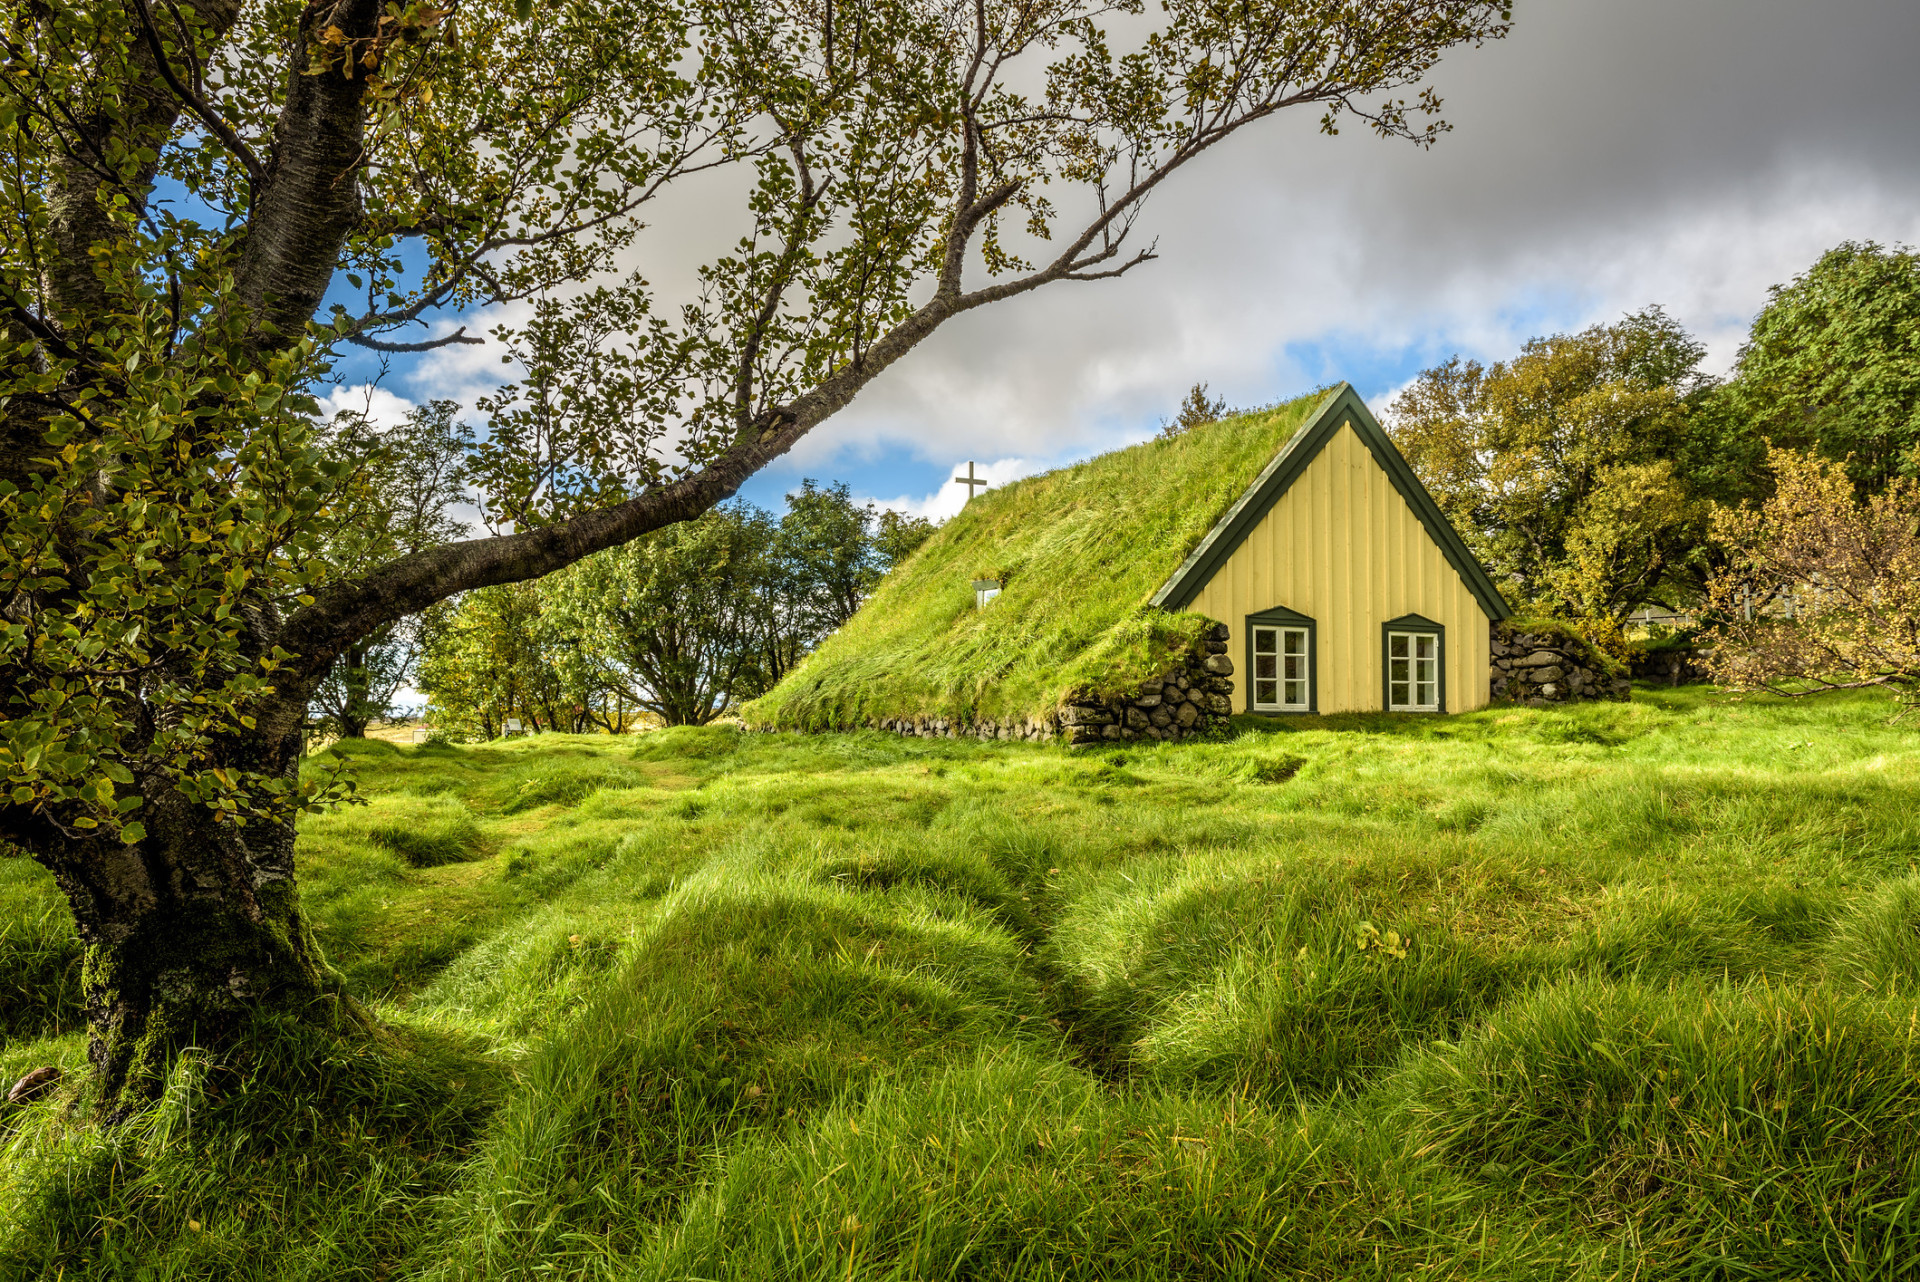 <p>Aujourd'hui, il est encore possible d'admirer des maisons au toit d'herbe à travers la campagne islandaise. En photo, une église à Hof, dans la région de Skaftafell.</p> <p>Découvrez aussi: <a class="gs-title" href="https://www.starsinsider.com/fr/voyage/257425/lecosse-une-splendeur-sous-estimee" rel="noopener">L'<strong>Écosse</strong>, une splendeur sous-estimée</a></p><p><a href="https://www.msn.com/fr-fr/community/channel/vid-7xx8mnucu55yw63we9va2gwr7uihbxwc68fxqp25x6tg4ftibpra?cvid=94631541bc0f4f89bfd59158d696ad7e">Suivez-nous et accédez tous les jours à du contenu exclusif</a></p>